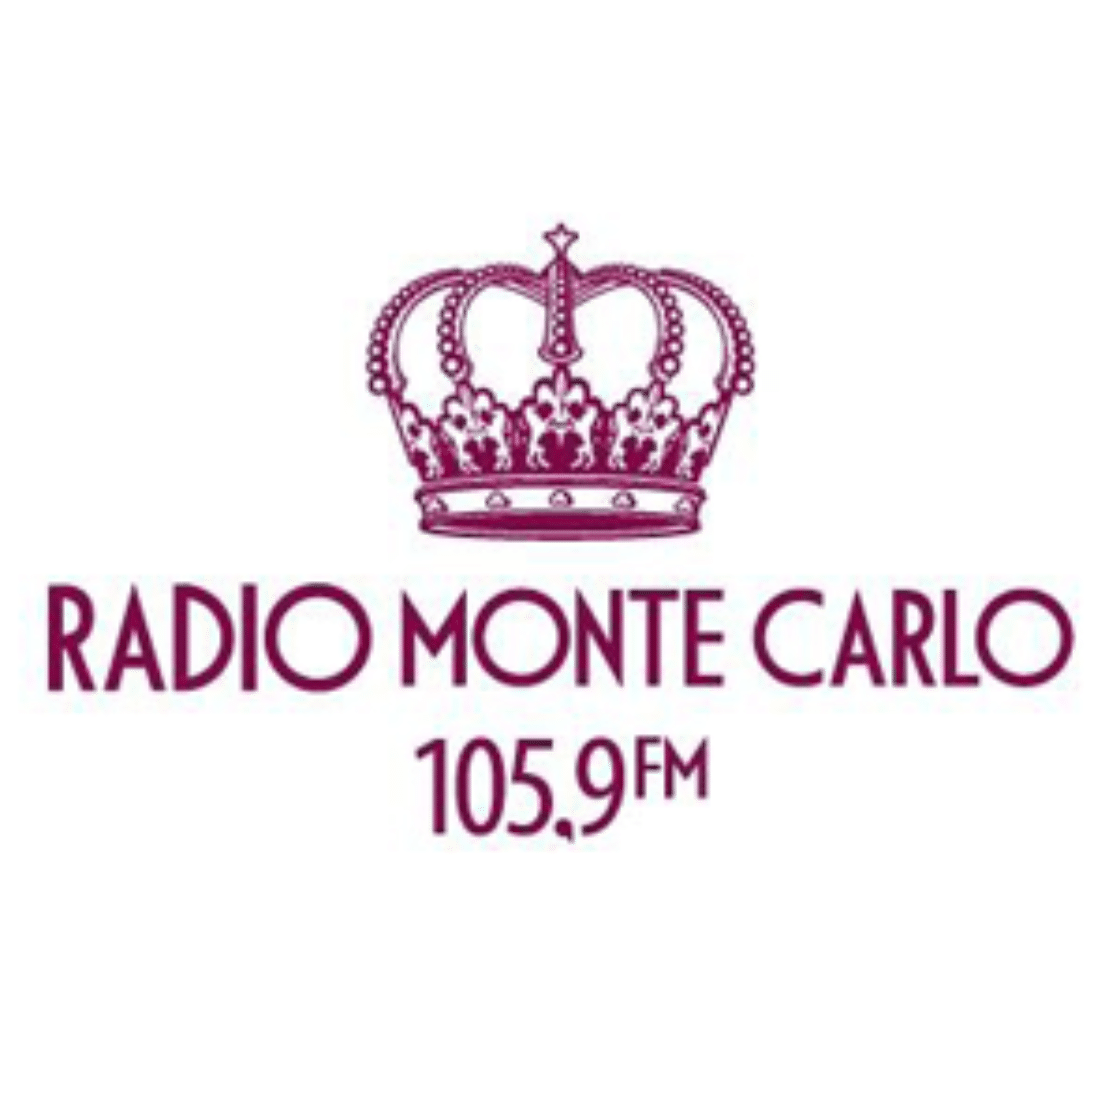 Радио монте карло телефон. Радио Monte Carlo логотип. Значки радио Монте Карло. Monte Carlo 105.9. Радио Монте-Карло Санкт-Петербург.